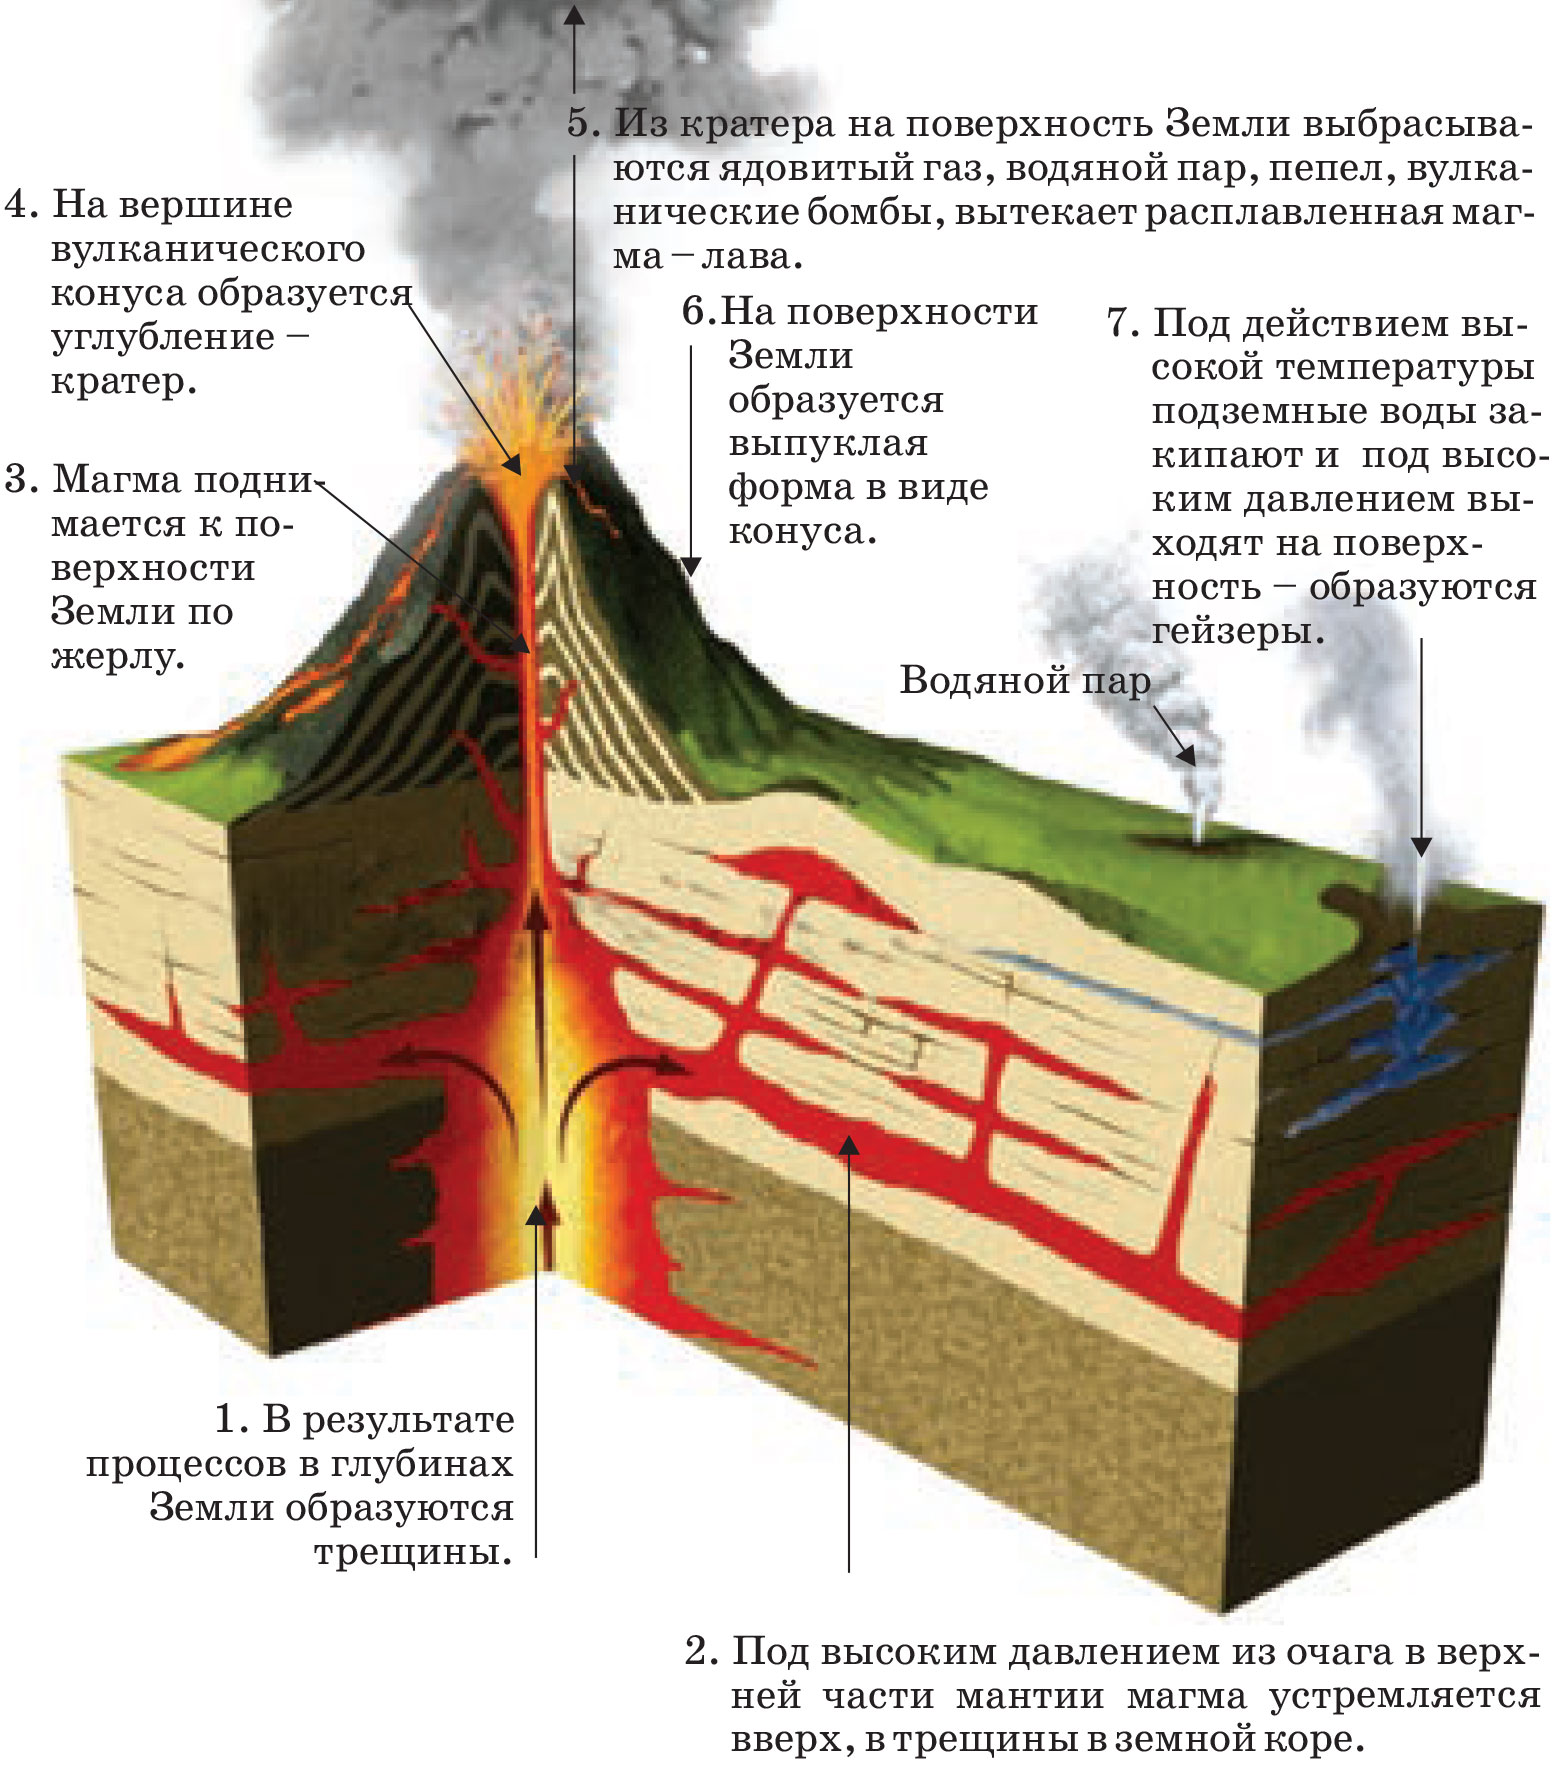 Извержение вулкана схема